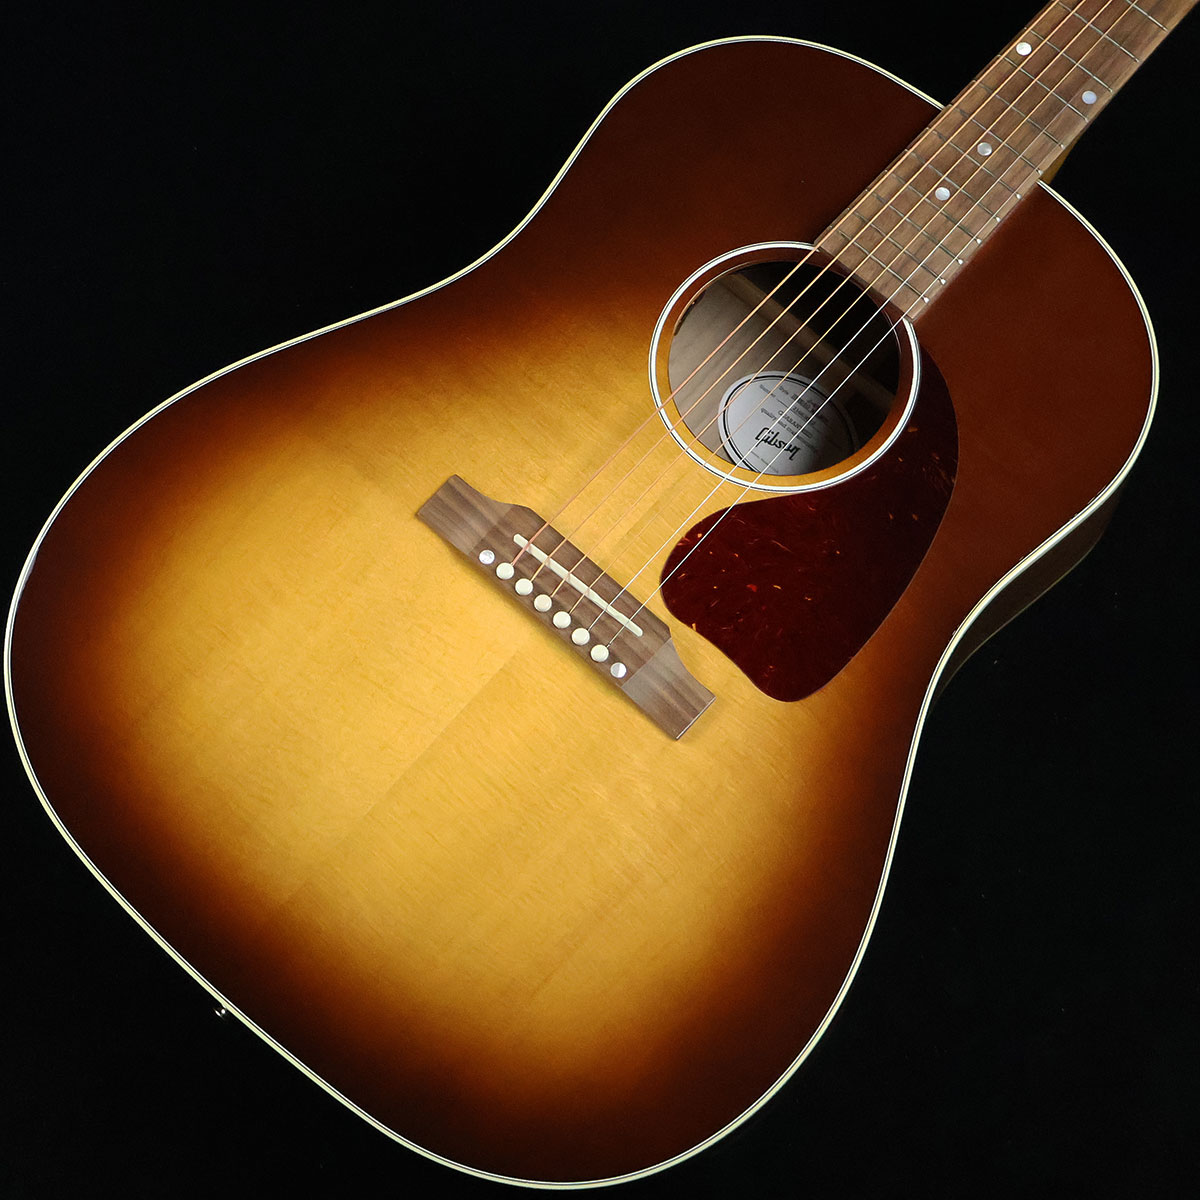 J-45のハイコストパフォーマンスモデル【特徴】ギブソンアコースティックギターの定番人気機種「J-45」のハイコストパフォーマンスモデル「J-45 Studio」。伝統的なボディシェイプを受け継ぎつつも厚さを若干薄くする事で抱えやすさが向上しています。ボディ材はシトカ・スプルース&ウォルナットの組み合わせ。硬質な木材ならではのレスポンスに優れた軽やかな鳴りが特徴です。新設計の「アドバンスト・レスポンス」と呼ばれるネックプロファイルは薄めの仕上がりとなっており握り込みやすく優れた演奏性を実現。ピックアップはL.R.BaggsのELEMENT VTCを搭載しておりVolumeに加えTone Controlが可能なだけでなく、オリジナルのコンプリミッターがビルトインされているため音量に関わらずバランスの取れたサウンドが得られライブなどでも即戦力となってくれます。【杢目マニア花井のイチオシポイント！】ギブソンのアコースティックギターでは圧倒的な人気を誇るJ-45のDNAを受け継ぎつつ、高いコストパフォーマンスを実現したこちらのモデル。お求めやすい価格ながらサウンドに関しては一切の妥協なし。音の立ち上がりが速く透明感のある煌びやかな鳴りが心地よくプレイヤーを包み込んでくれます。J-45 Standardと比較してどちらが「良い」「悪い」という事ではなく「キャラクターの違い」をお楽しみください。個体によって異なるウォルナットの杢目も個性を主張する大きなポイントですね。この商品についての詳しいお問い合わせは TEL：0570-020-025 または「お問い合わせフォーム」よりお願いします。 【花井's Profile】 長野県松本市出身。三度のメシより杢（もく）が好き、自他ともに認める杢目マニア。14年間勤務していた松本店では「ギター生産量日本一」の環境を活かし地元のメーカーや工房とコラボレーションしたショップオーダーモデルなどを多数企画。ギターの製作現場にて数々の職人とミーティングを重ね木材の知識やカスタムオーダーのノウハウを蓄積。これまで培った知識と経験を活かし、彼自身がセレクト〜撮影までおこなったギターをオンラインストアに掲載中。その魅力を全国のギターファンに伝えている。 【詳細情報】BODY TOP ： Sitka SpruceBODY SIDE & BACK ： WalnutBRACING ： Traditional Hand-Scalloped X-BracingNECK ： Mahogany （Advanced Response Profile）FINGERBOARD ： WalnutNUT ： TusqBRIDGE ： WalnutSADDLE ： TusqBRIDGE PIN ： TusqFRET ： 20FTUNER ： Grover RotomaticsPICKUP ： L.R.Baggs Element VTCSTRINGS ： .012、.016、.024、.032、.042、.053COLOR ： Walnut BurstCASE ： HardcaseJANコード：0711106037158【gibson】【gbsnmkm_kw】【2019】